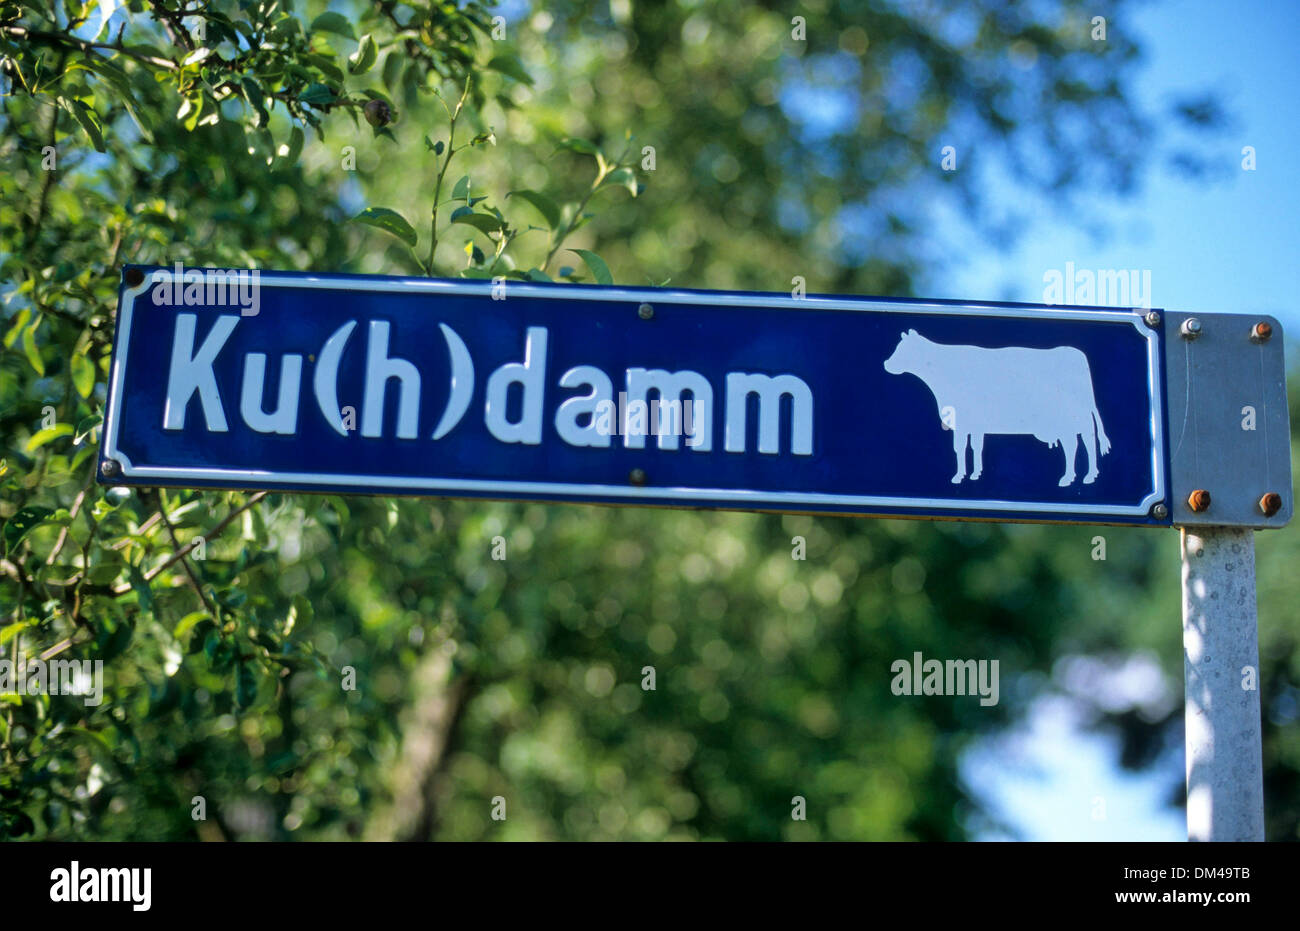 Street sign Kuhdamm, Straßenschild Kuhdamm Ku(H)damm, Kudamm, Ku’damm Stock Photo